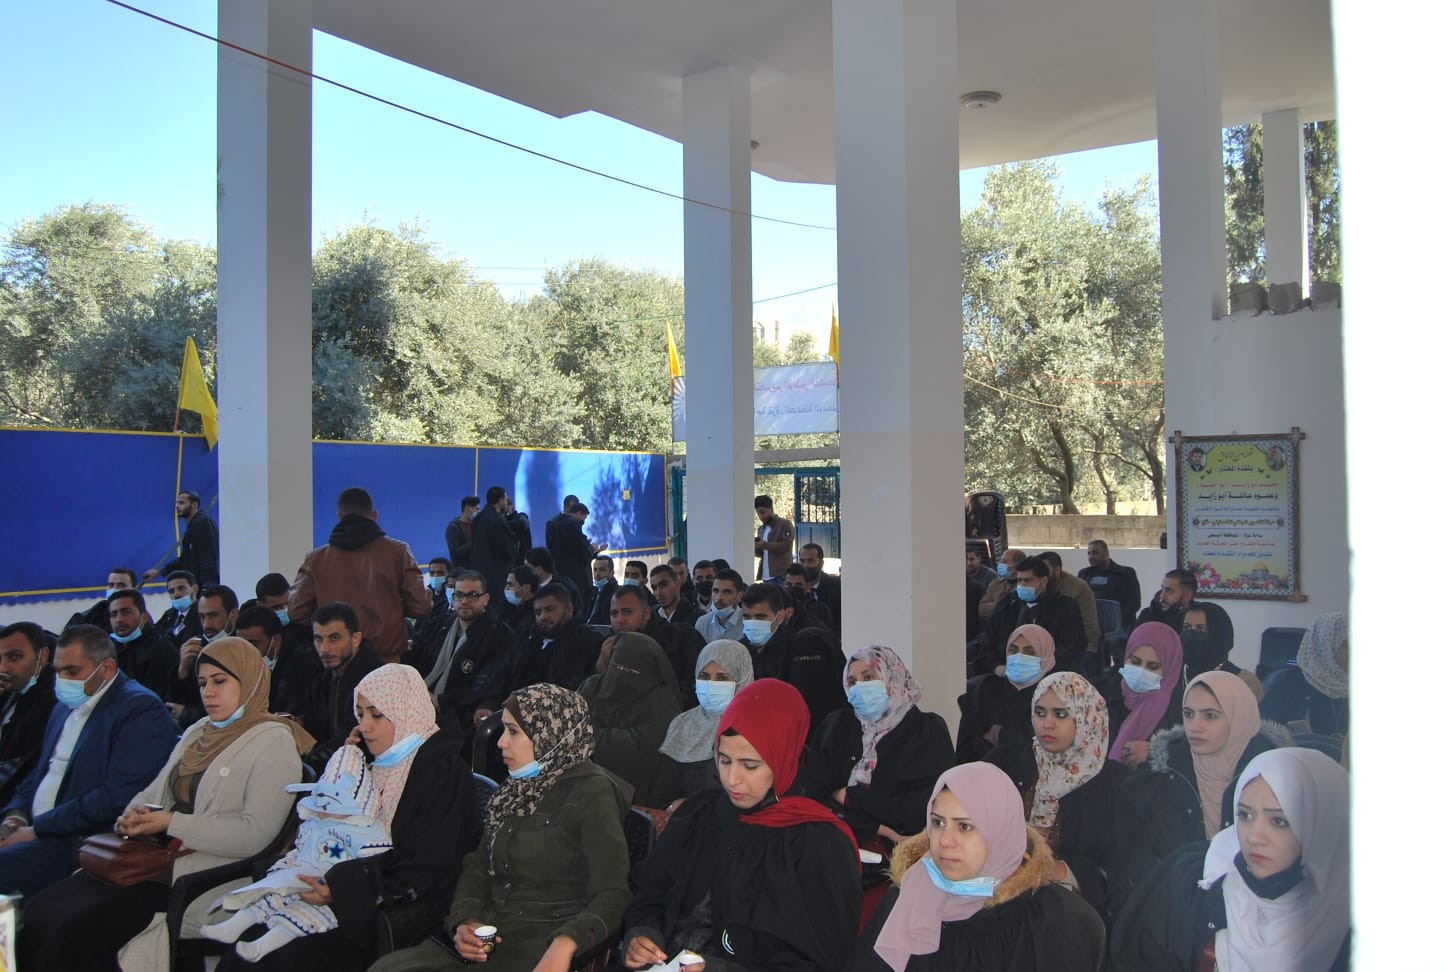 بالصور: المكاتب الحركية بساحة غزّة تُكرم كوكبة من المحامين في المحافظة الوسطى